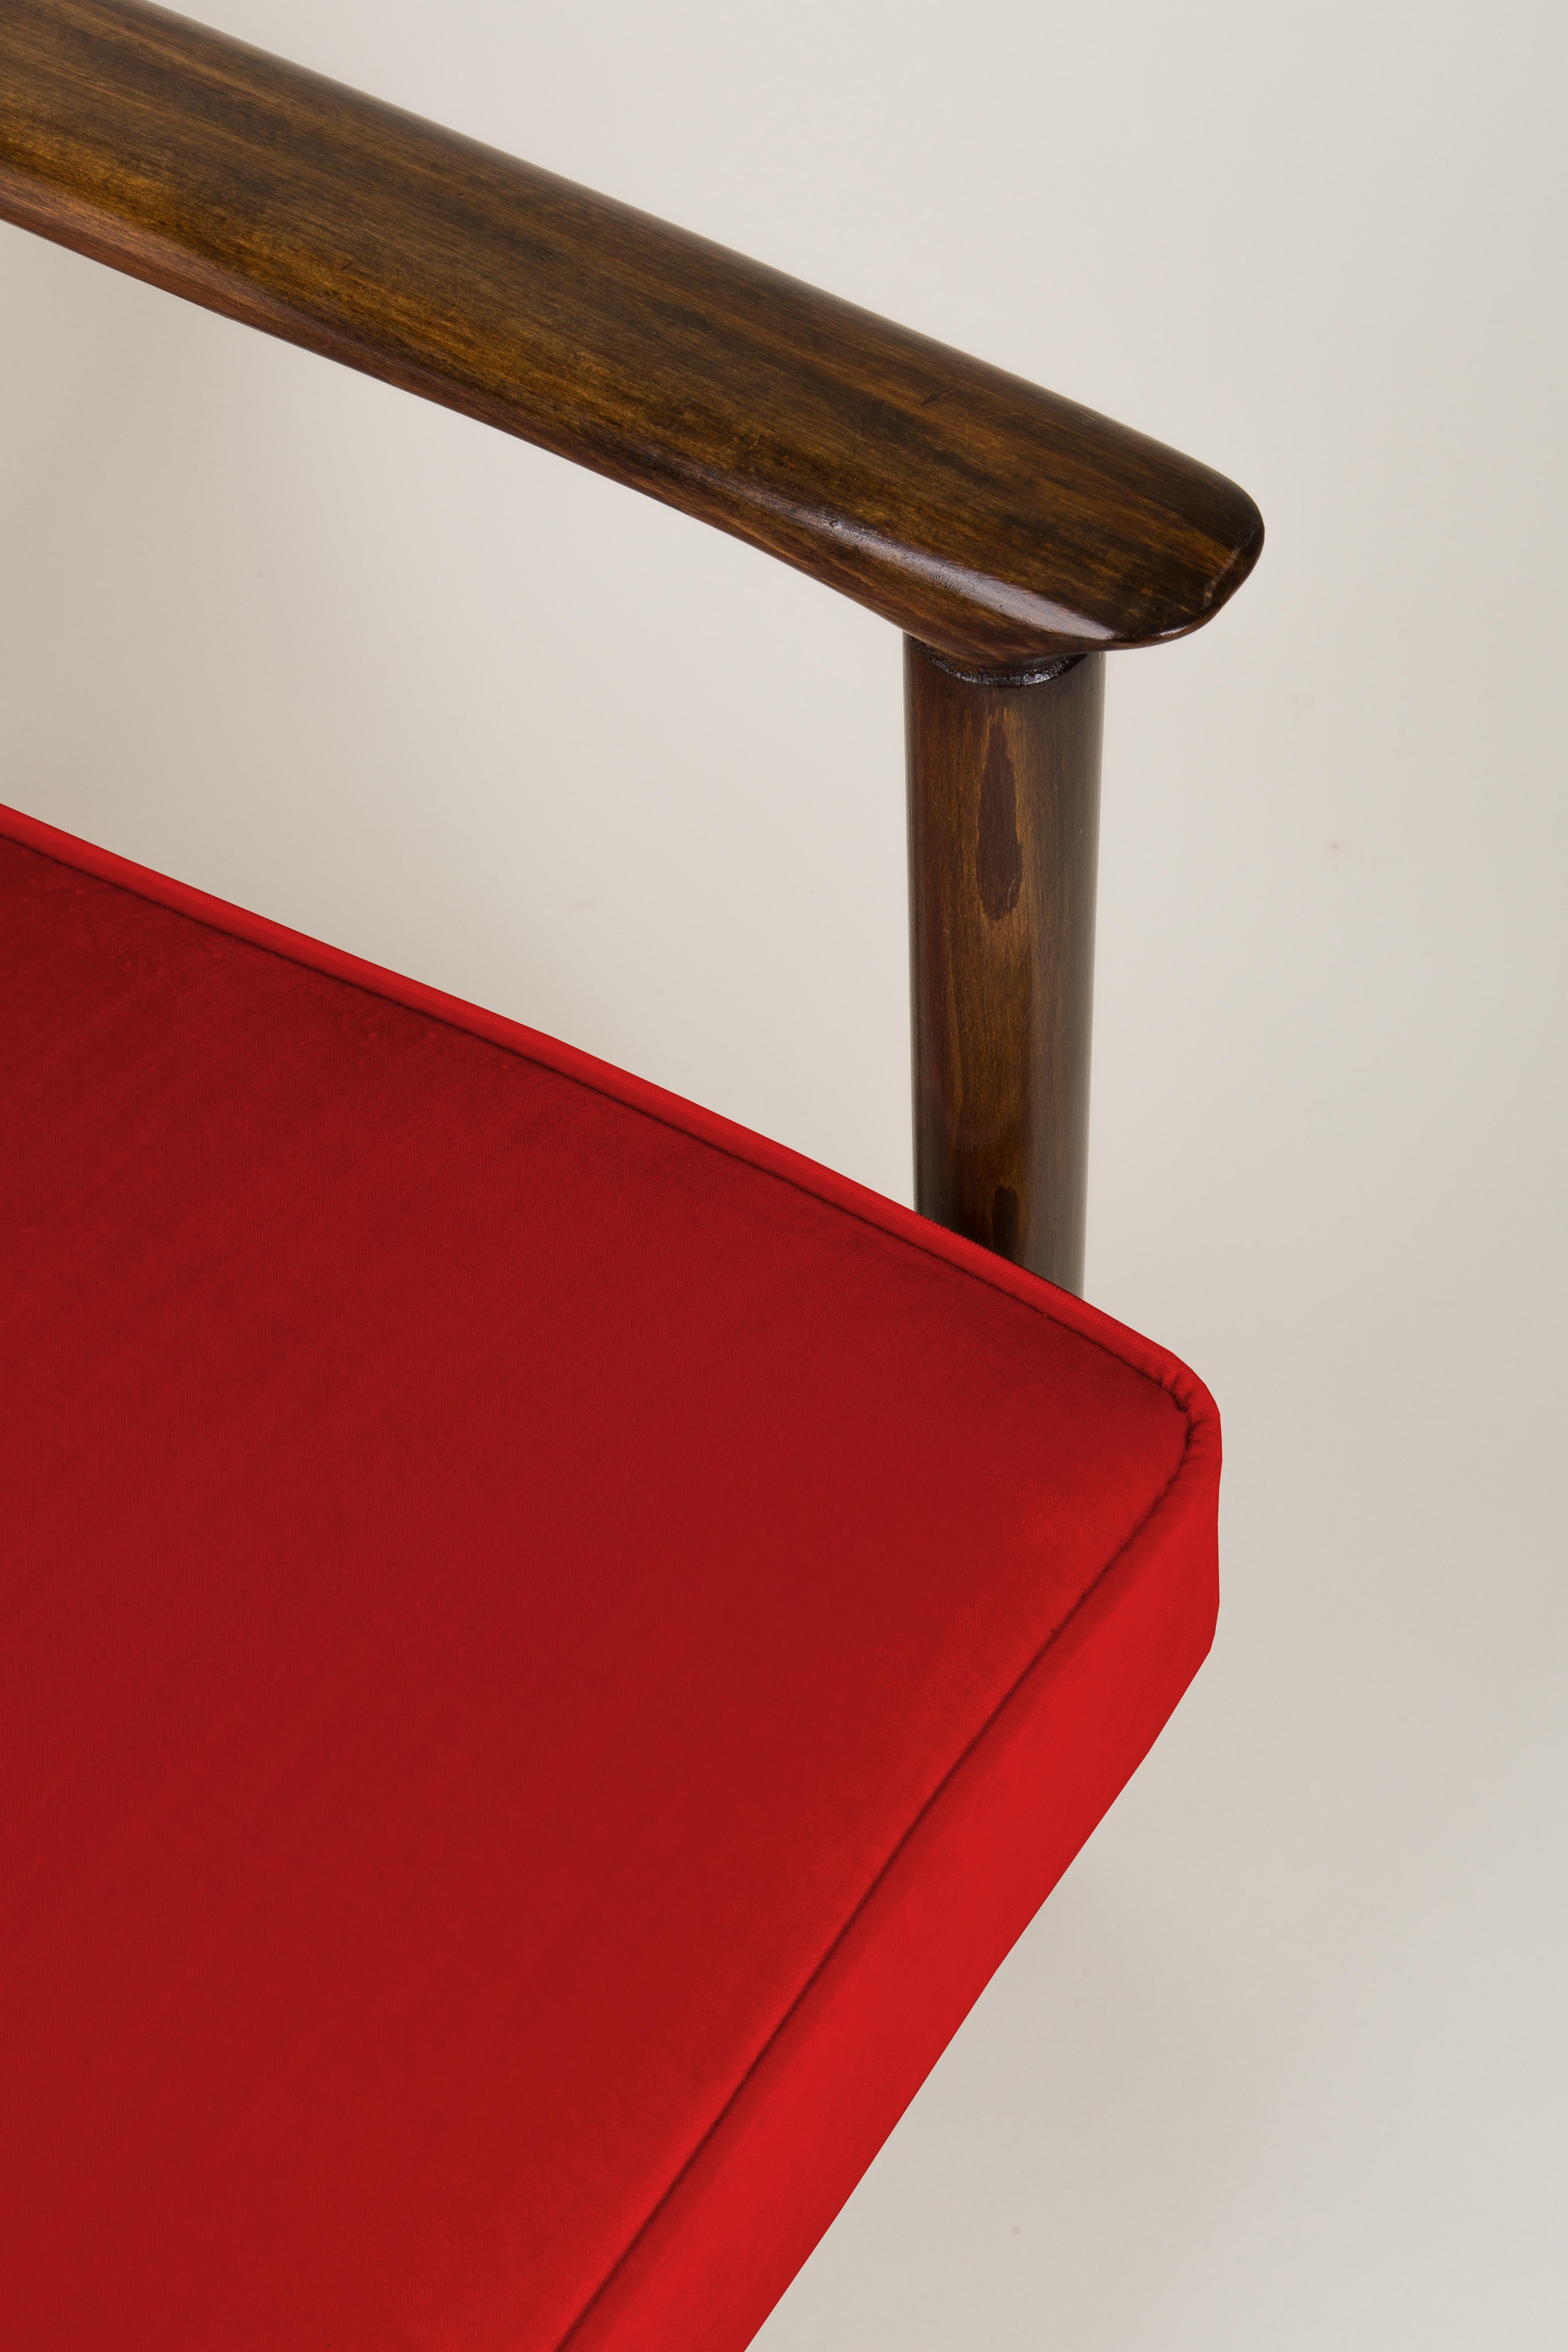 Sessel GFM-142, entworfen von Edmund Homa. Der Sessel wurde in den 1960er Jahren in der Möbelfabrik Gosciecinska in Polen hergestellt. Sie sind aus massivem Buchenholz gefertigt. Der GFM-142 Sessel gilt als einer der besten polnischen Sesseldesigns